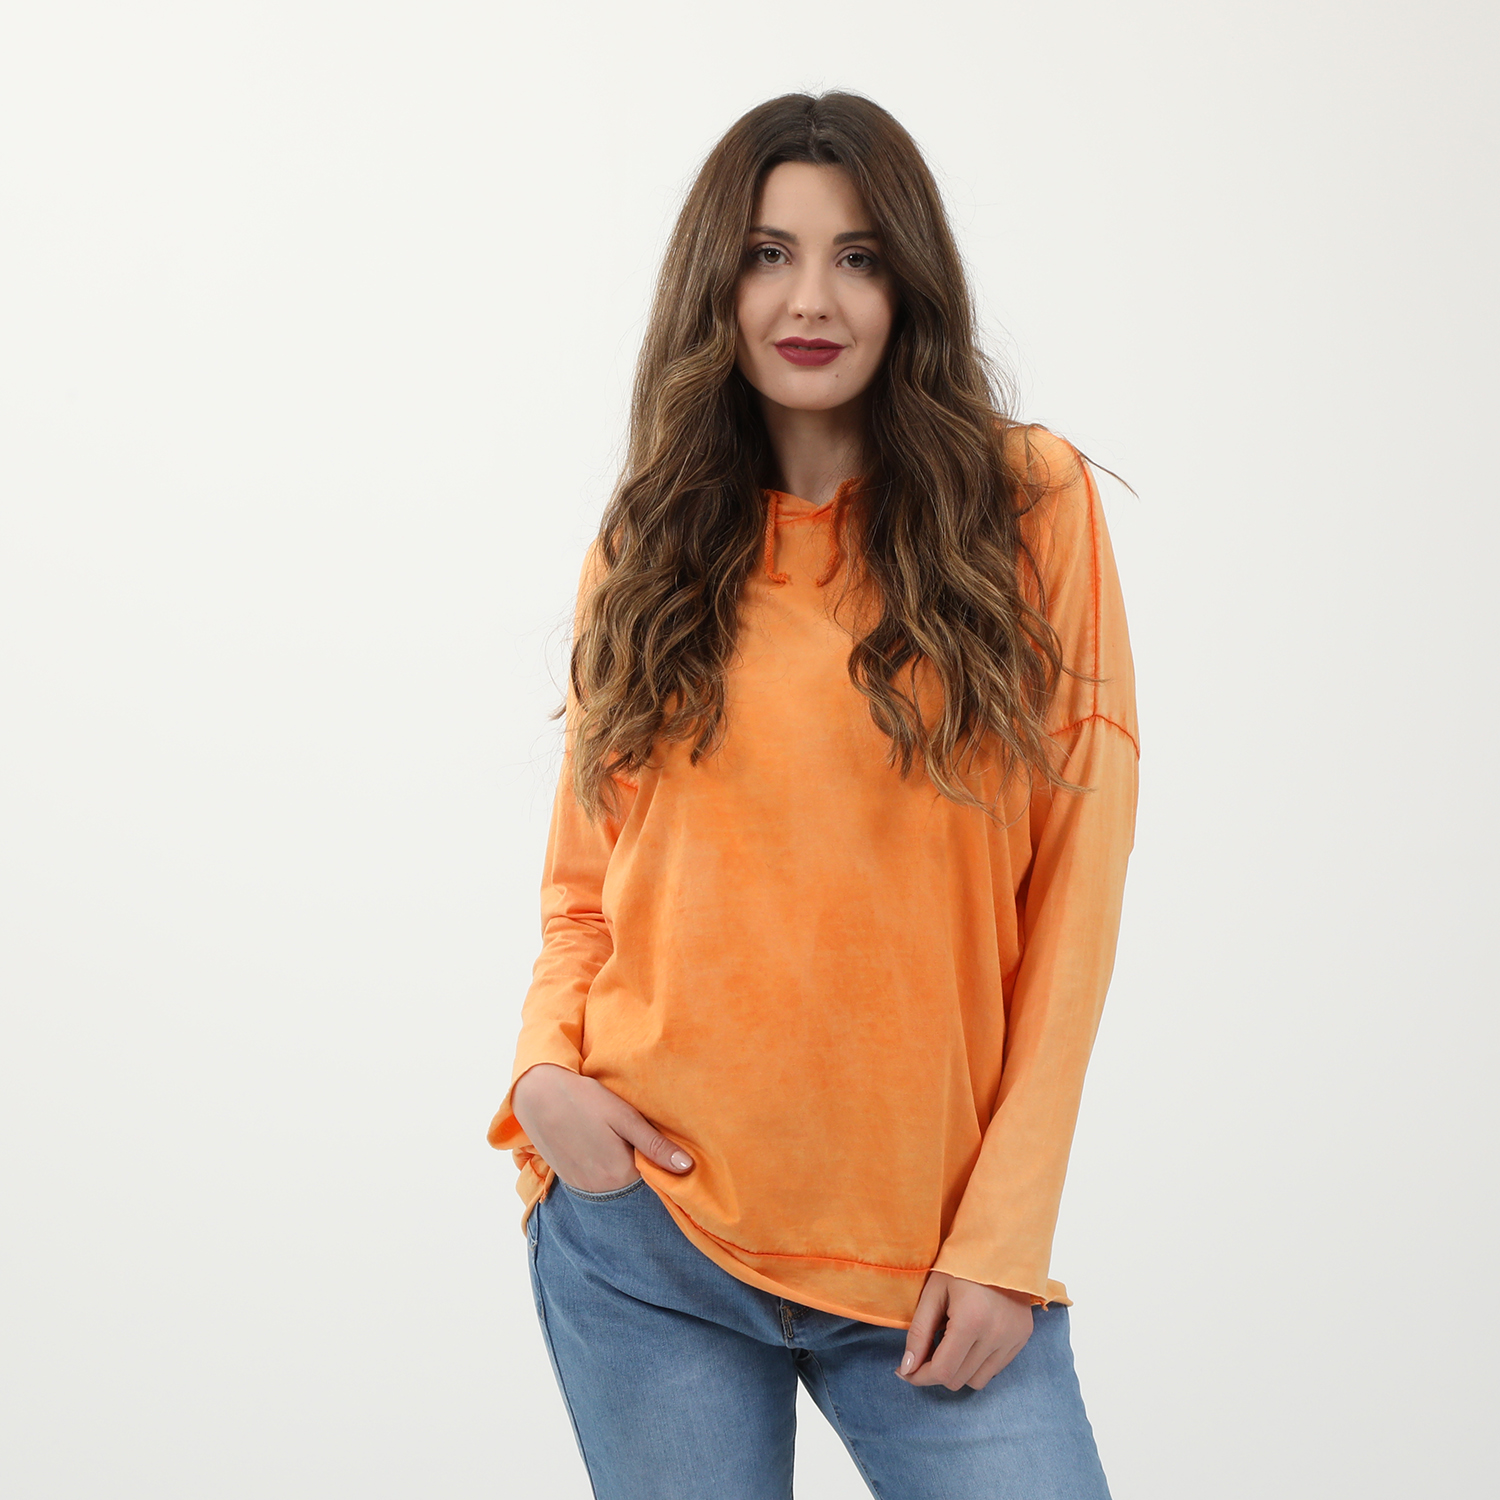 Γυναικεία/Ρούχα/Μπλούζες/Μακρυμάνικες 'ALE - Γυναικεία βαμβακερή μπλούζα 'ALE πορτοκαλί